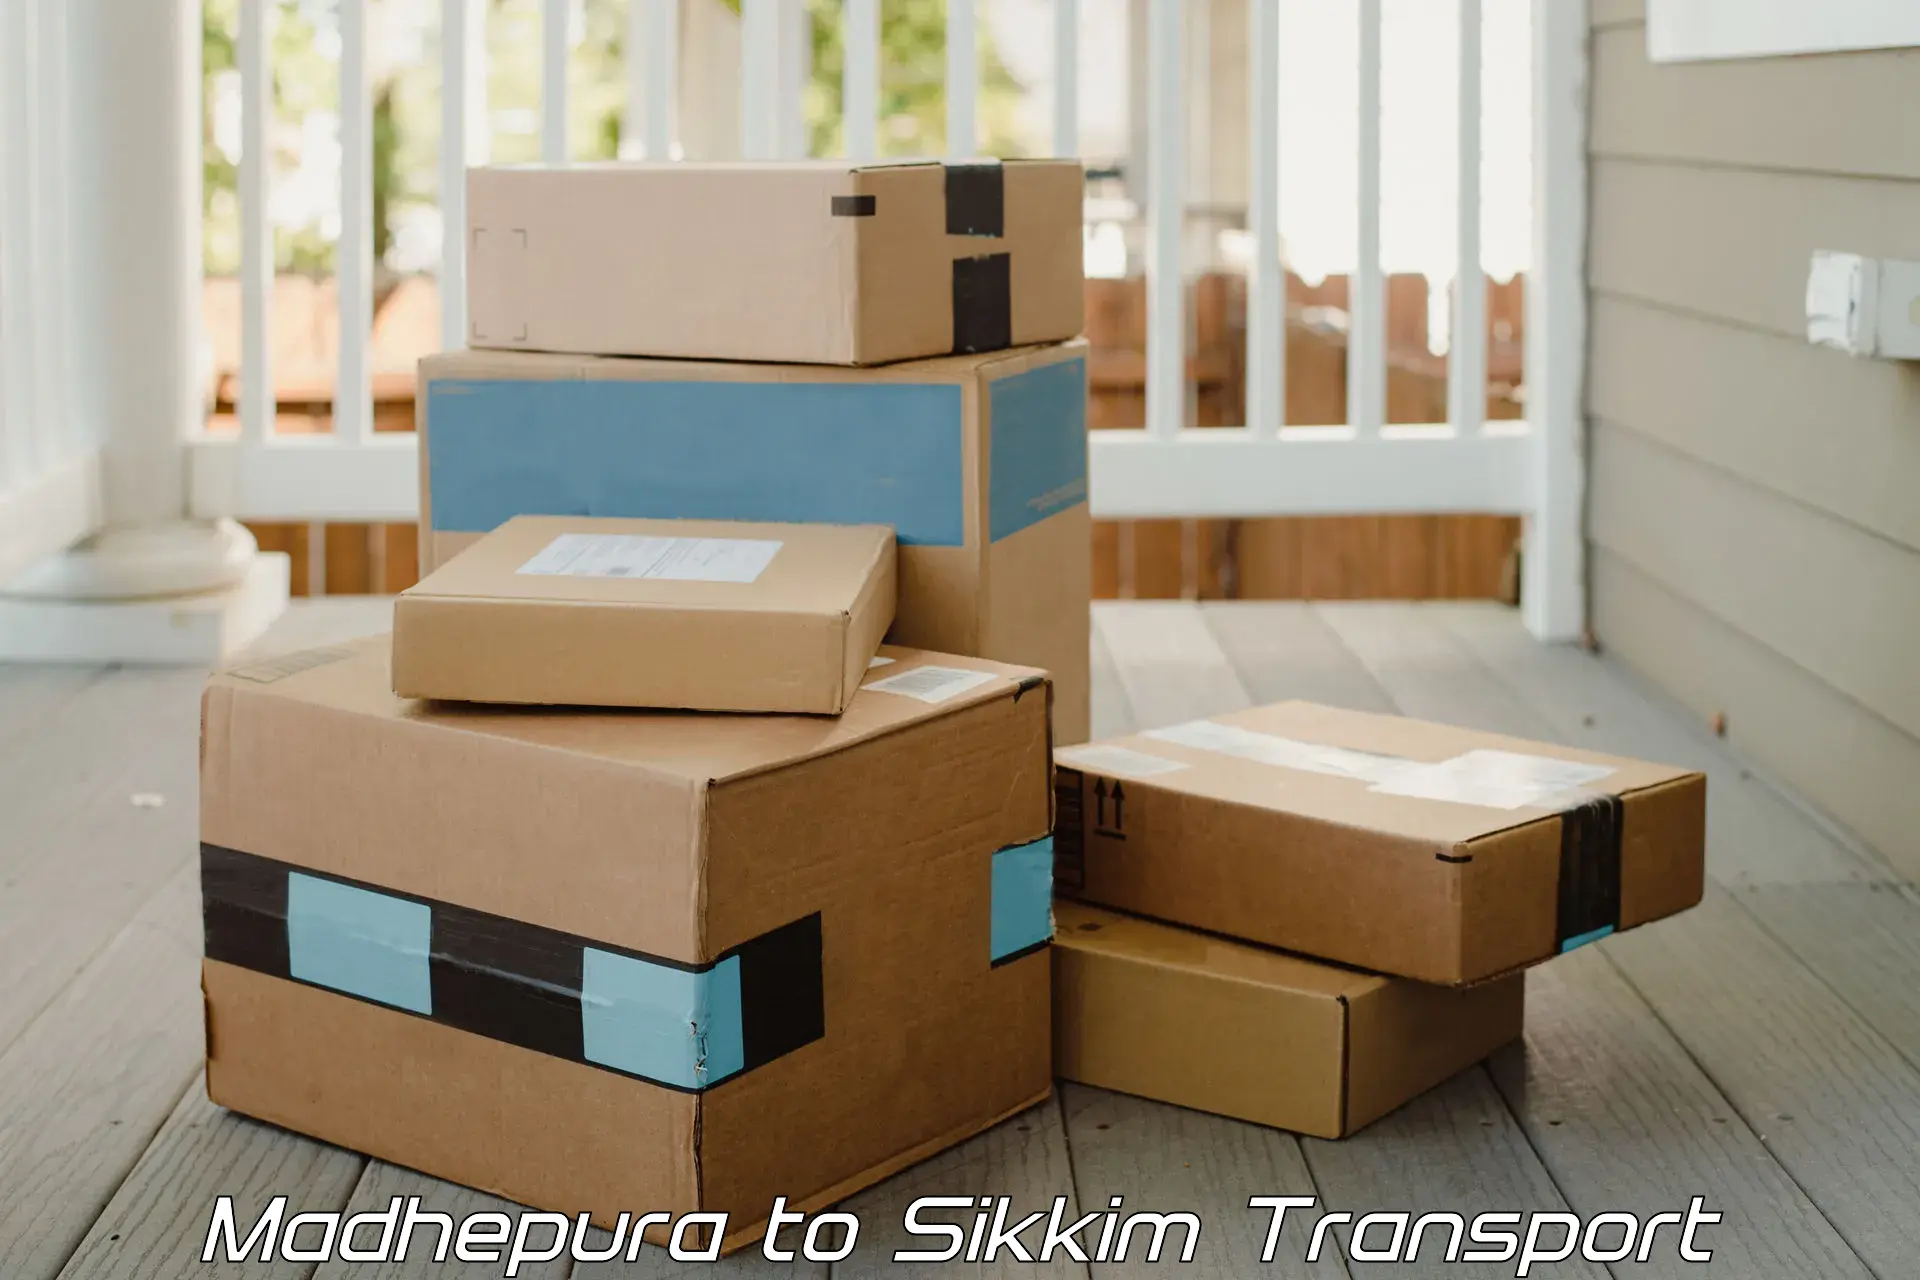 Online transport booking Madhepura to Geyzing